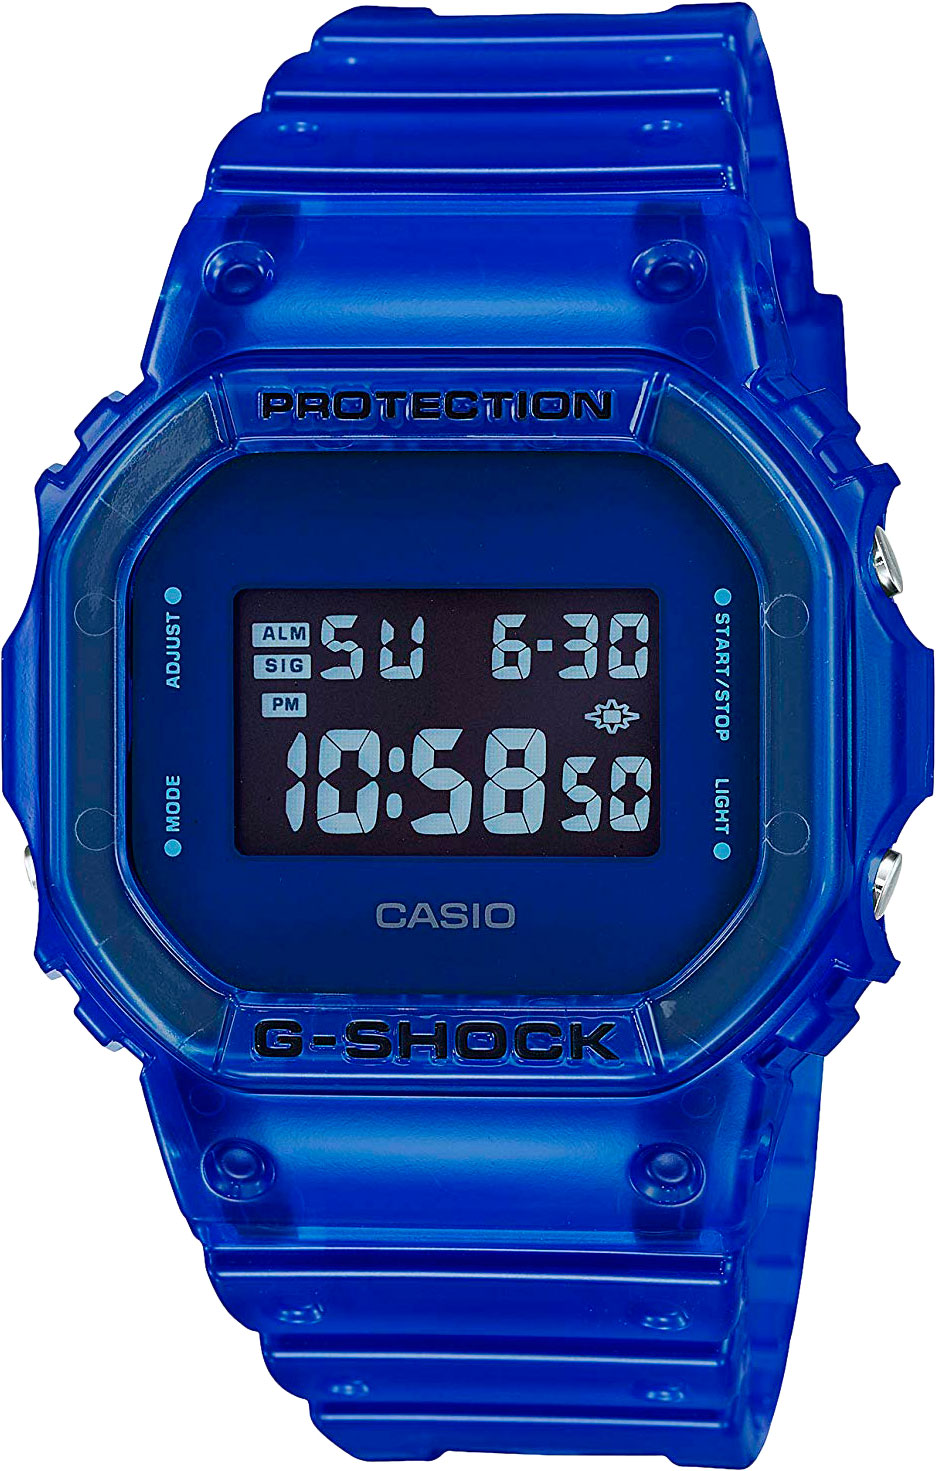 Японские наручные часы Casio G-SHOCK DW-5600SB-2ER с хронографом